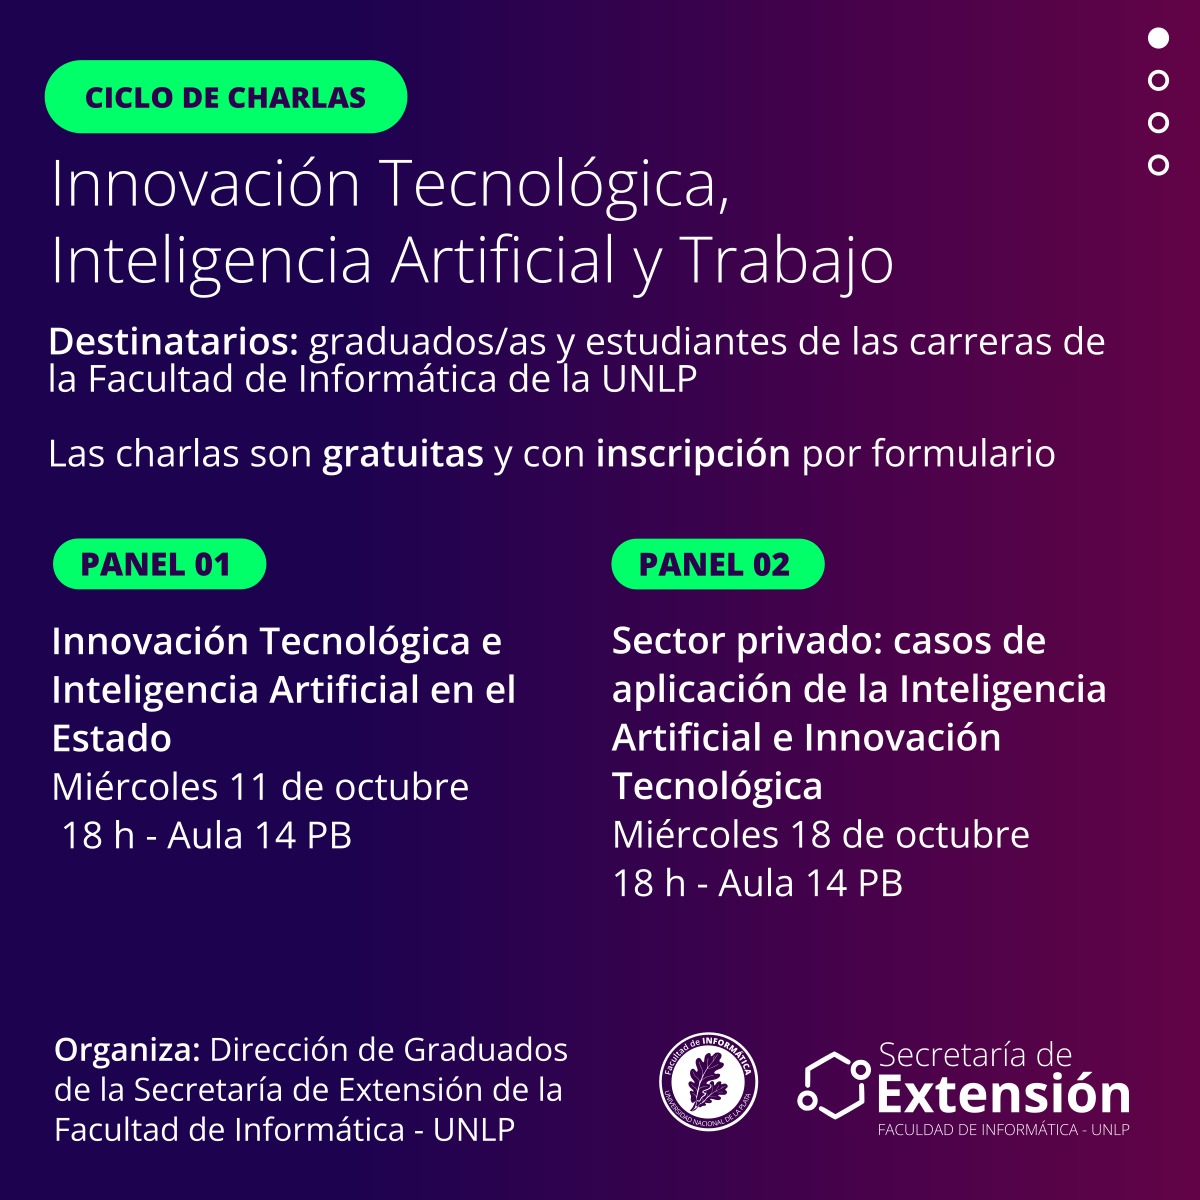 Ciclo de Charlas - Innovación Tecnológica, Inteligencia Artificial y Trabajo.